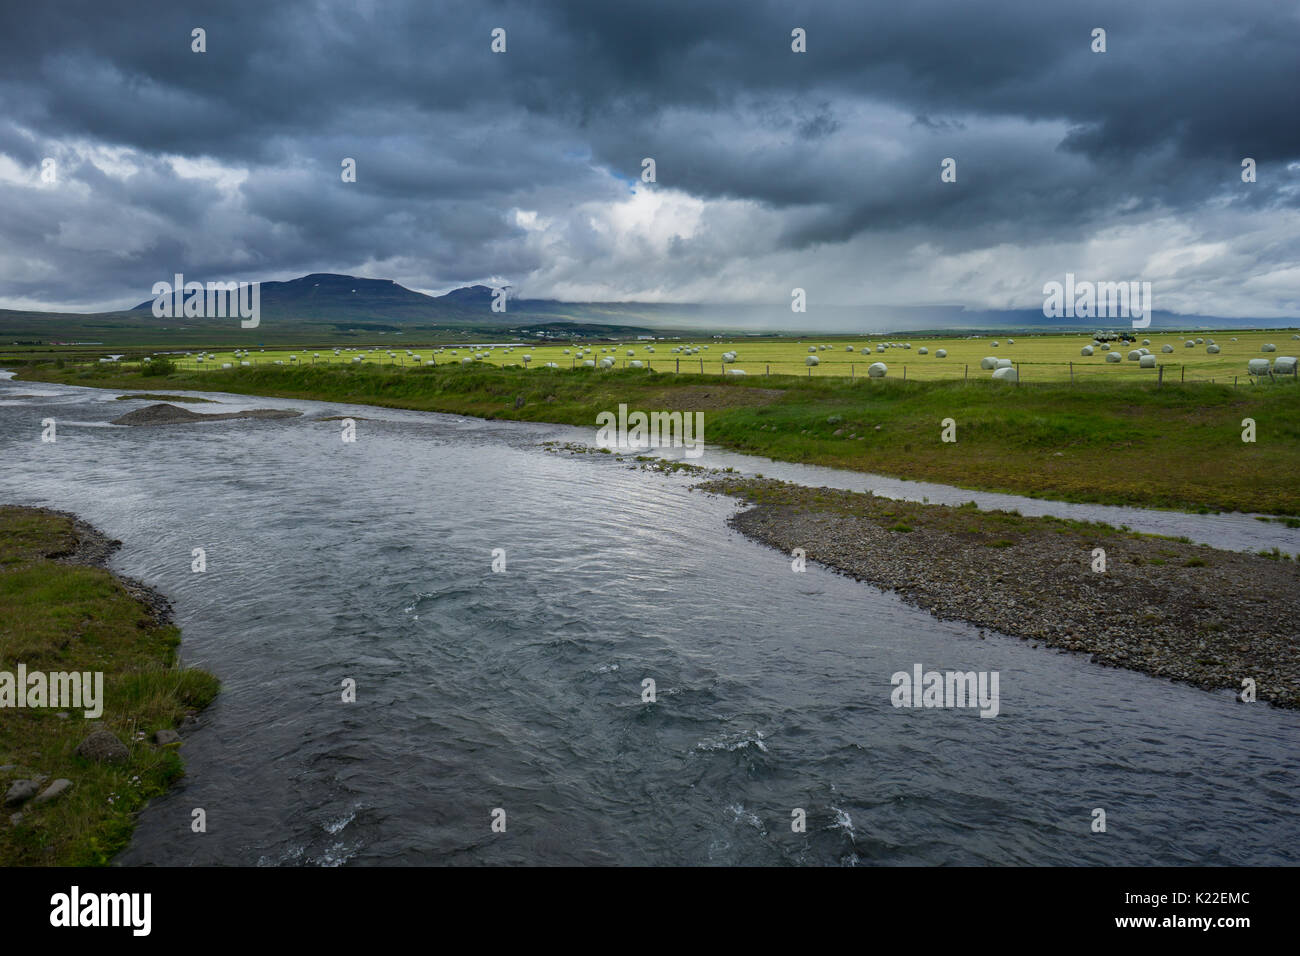 Island - Hunderte von Strohballen hinter dem Fluss auf der grünen Wiese mit intensivem Regen Wolken und der Traktor während Gewitter Stockfoto